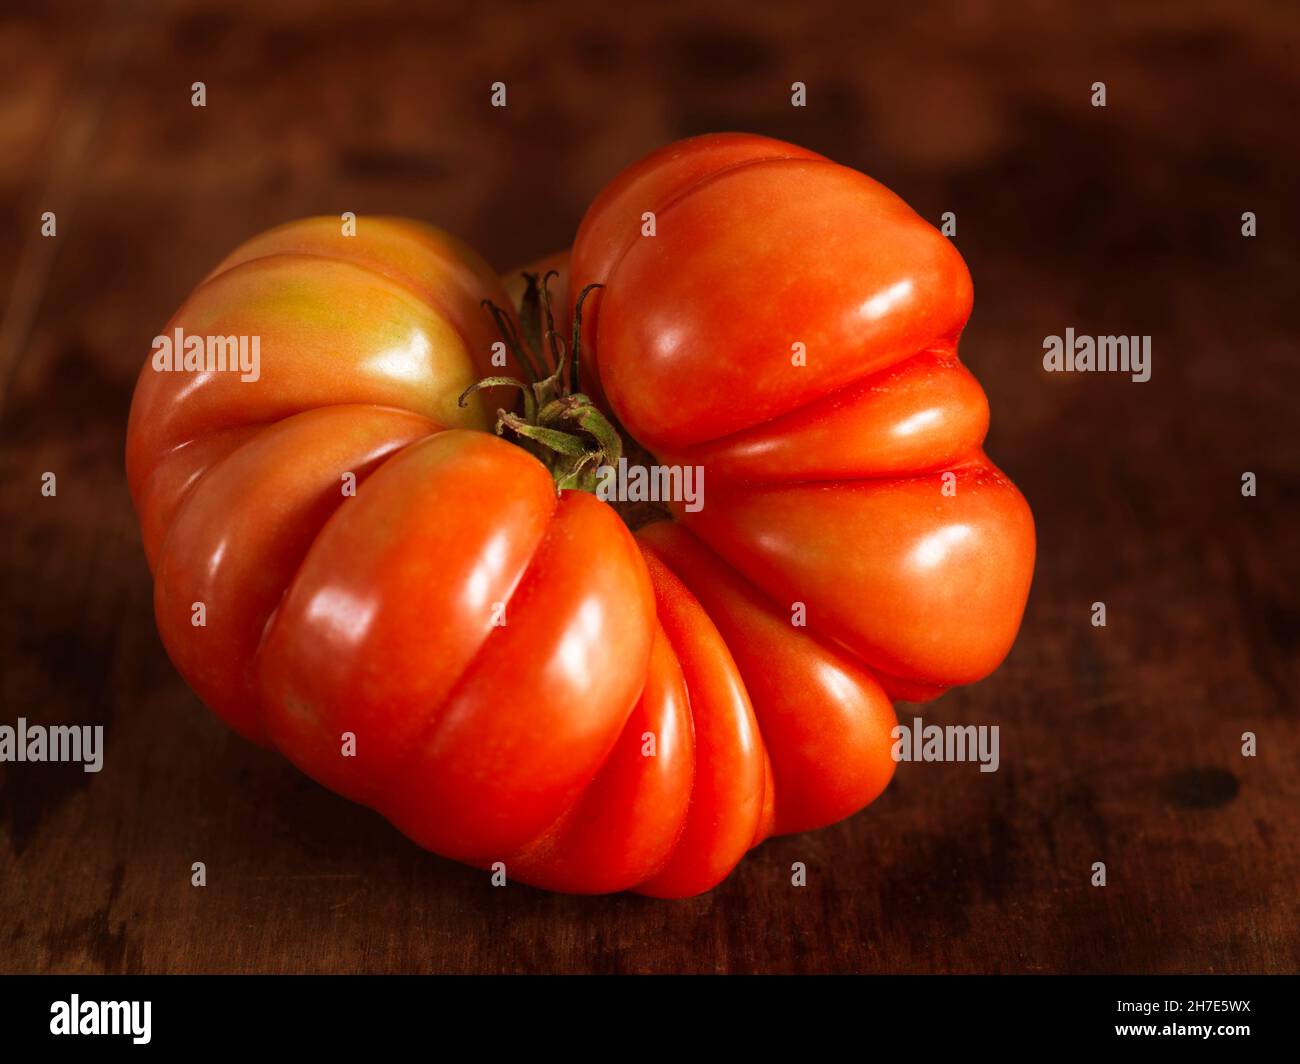 Heirloom tomato Stock Photo